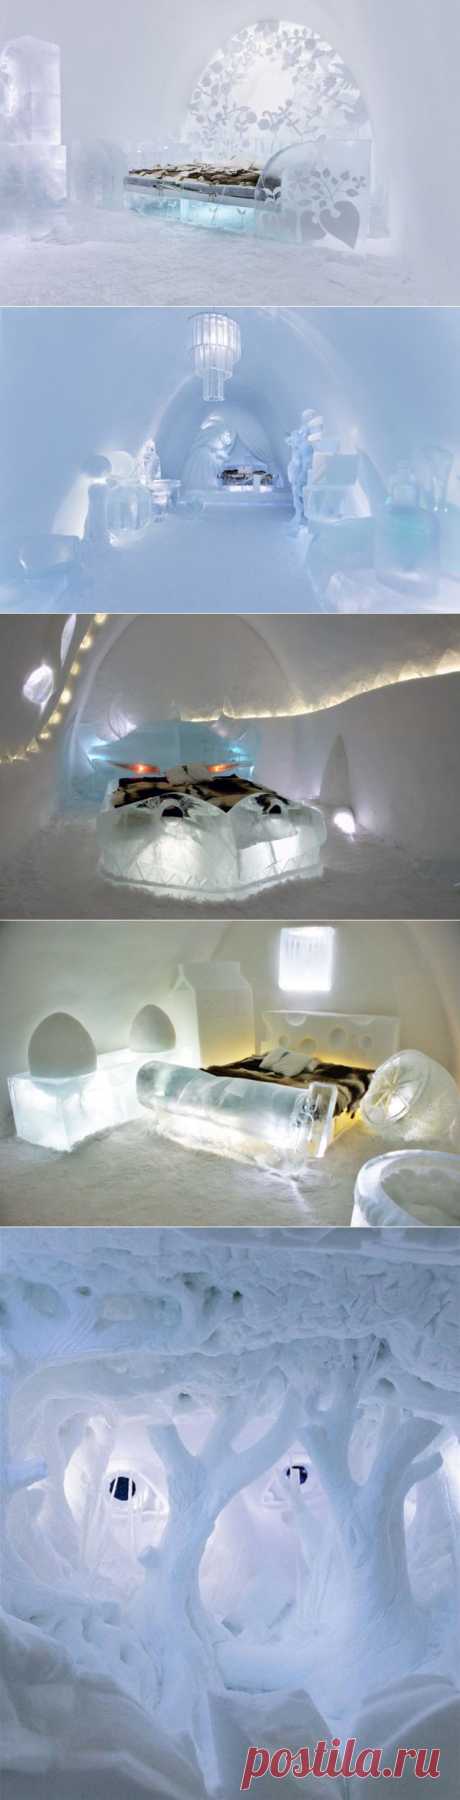 Ледяной отель в Швеции.